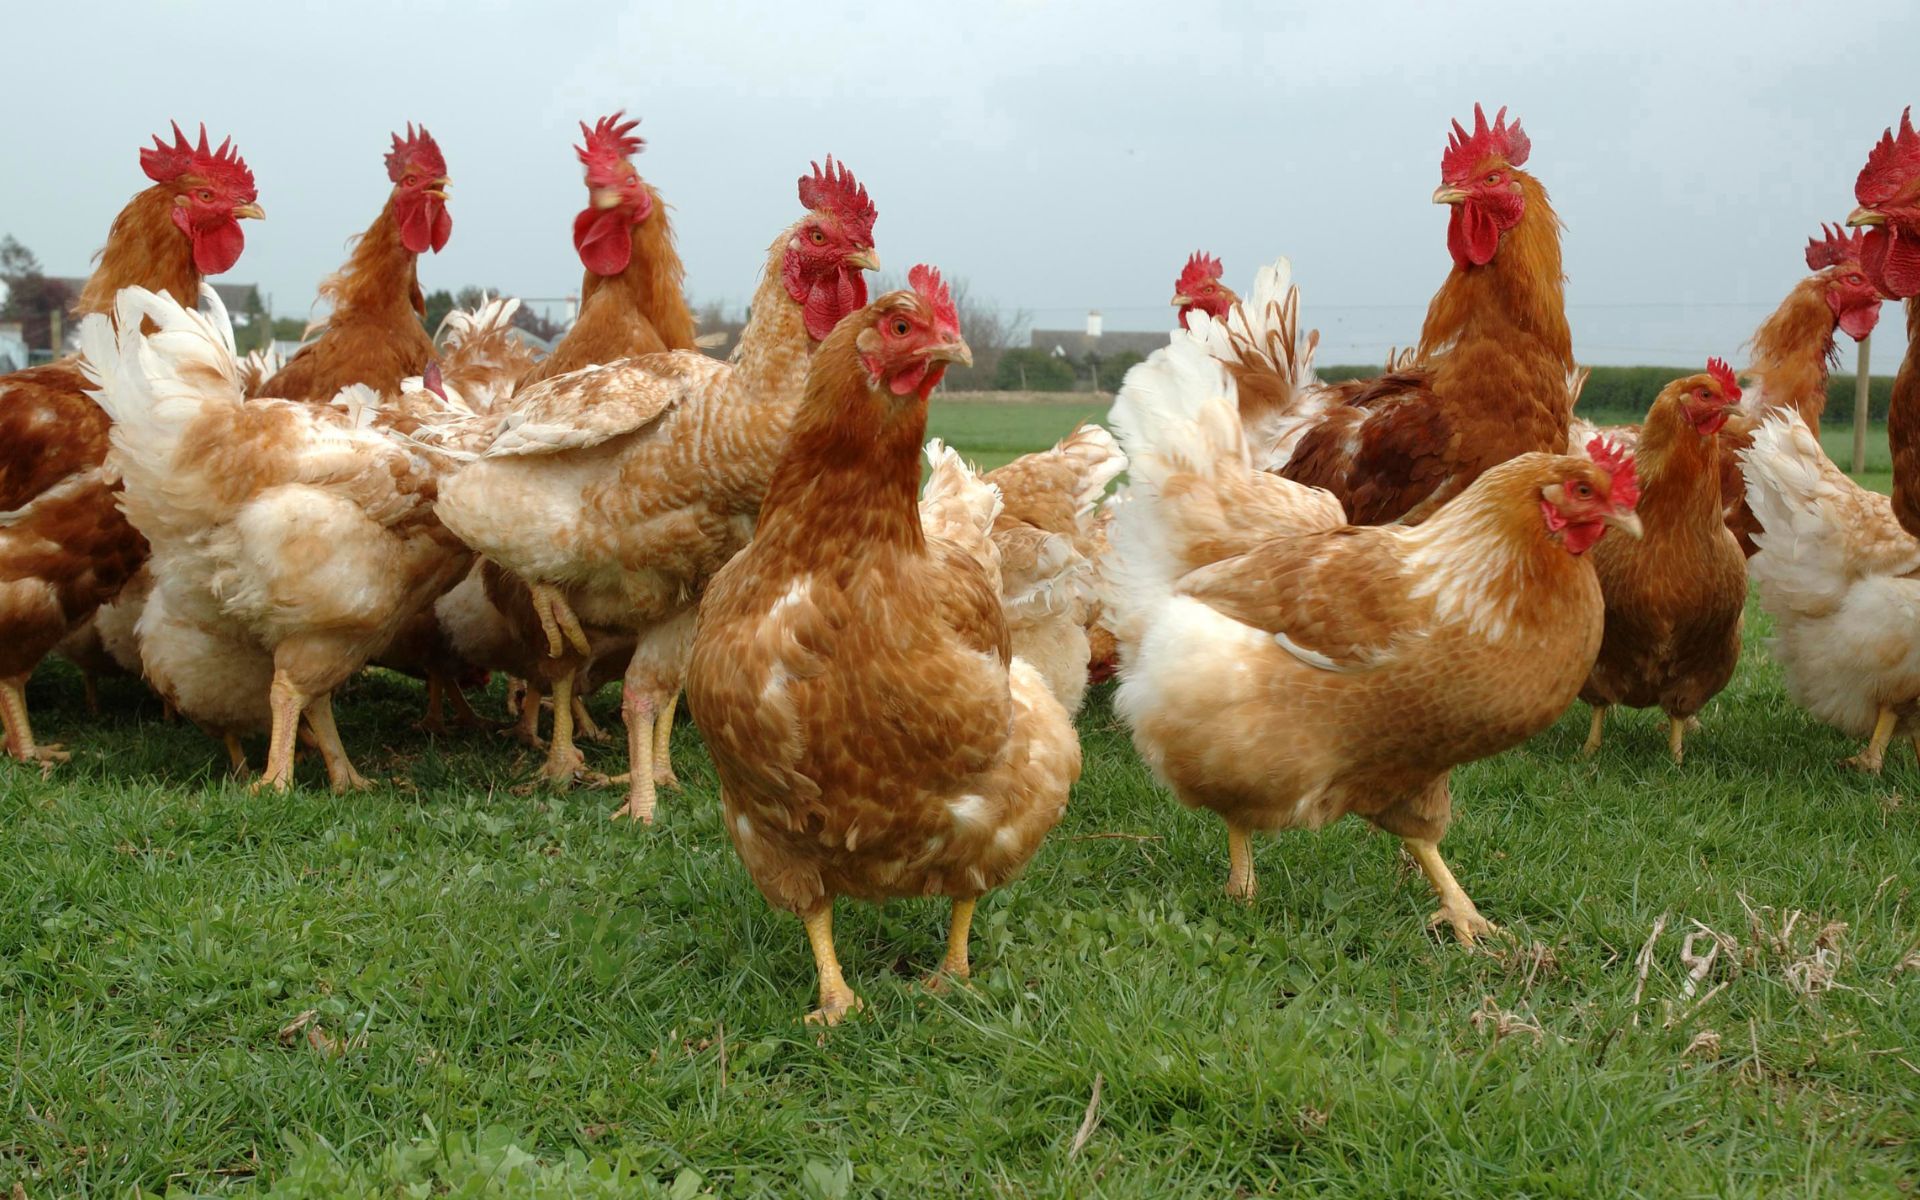 un grupo de gallinas pasta al aire libre en una granja de gran extensión.